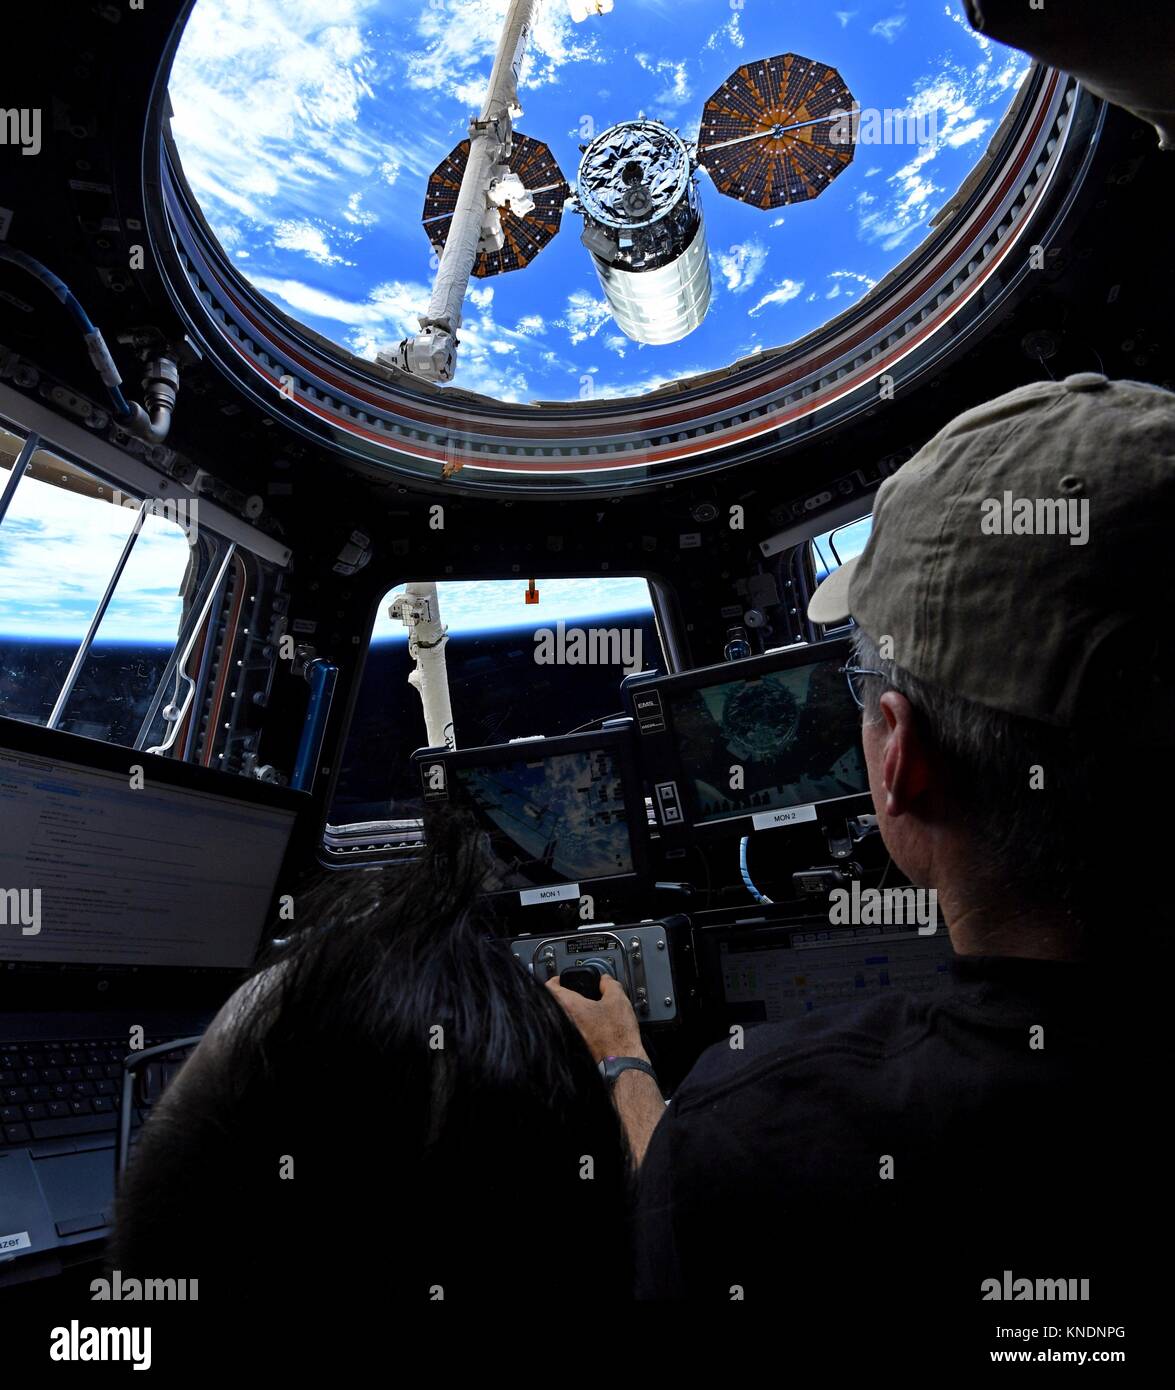 Expedition 53 amerikanische Astronaut Mark Vande Hei an den Kontrollen der robotischen Kanada Arm 2 vor der Freigabe der Orbital ATK Cygnus cargo Raumfahrzeug von der internationalen Raumstation am 6. Dezember 2017 in der Erdumlaufbahn. Cygnus eingesetzt 14 CubeSats aus dem NanoRacks Bereitsteller und wird später auf destruktive Wiedereintritt in die Atmosphäre der Erde verbrannt werden. Stockfoto